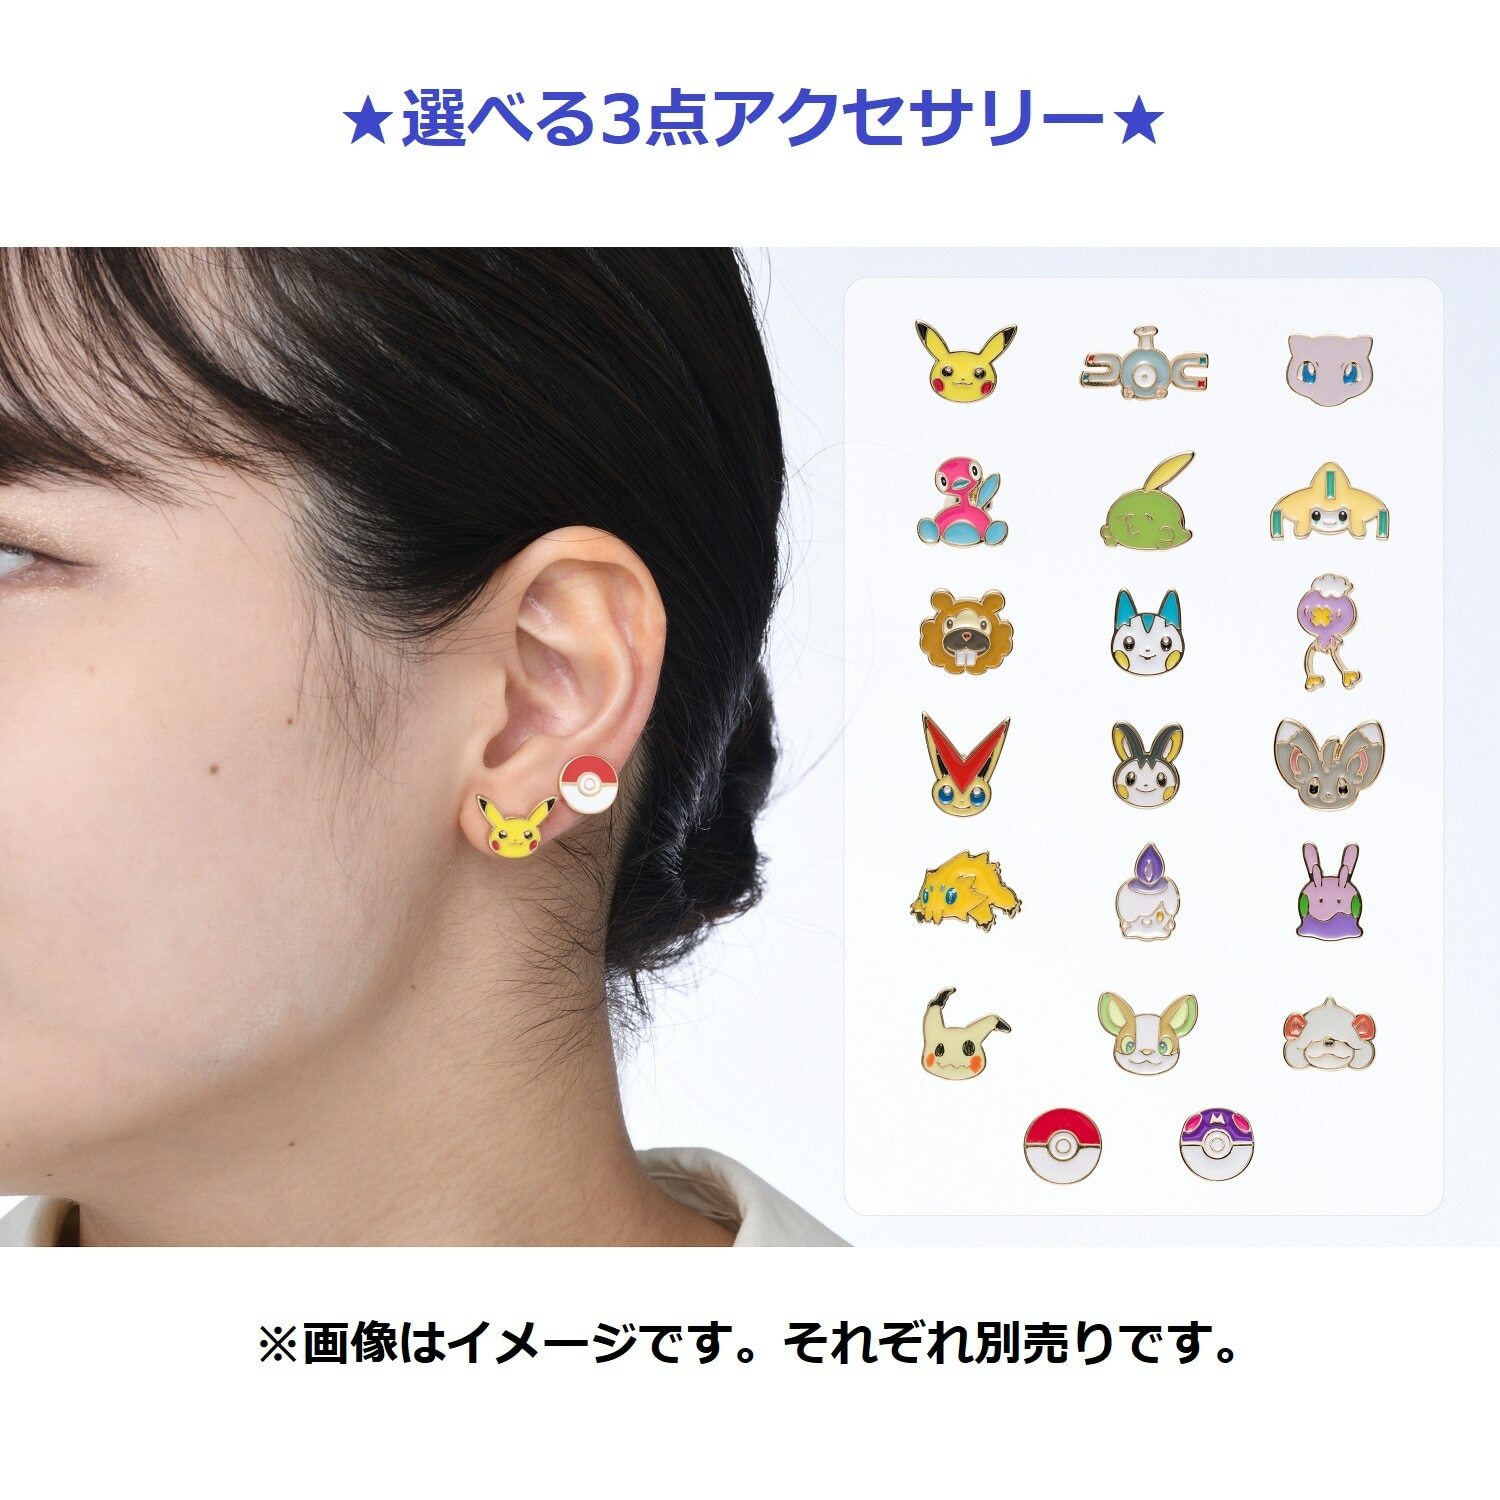 【代購】Pokémon accessory P19 合金精靈球 針式耳環